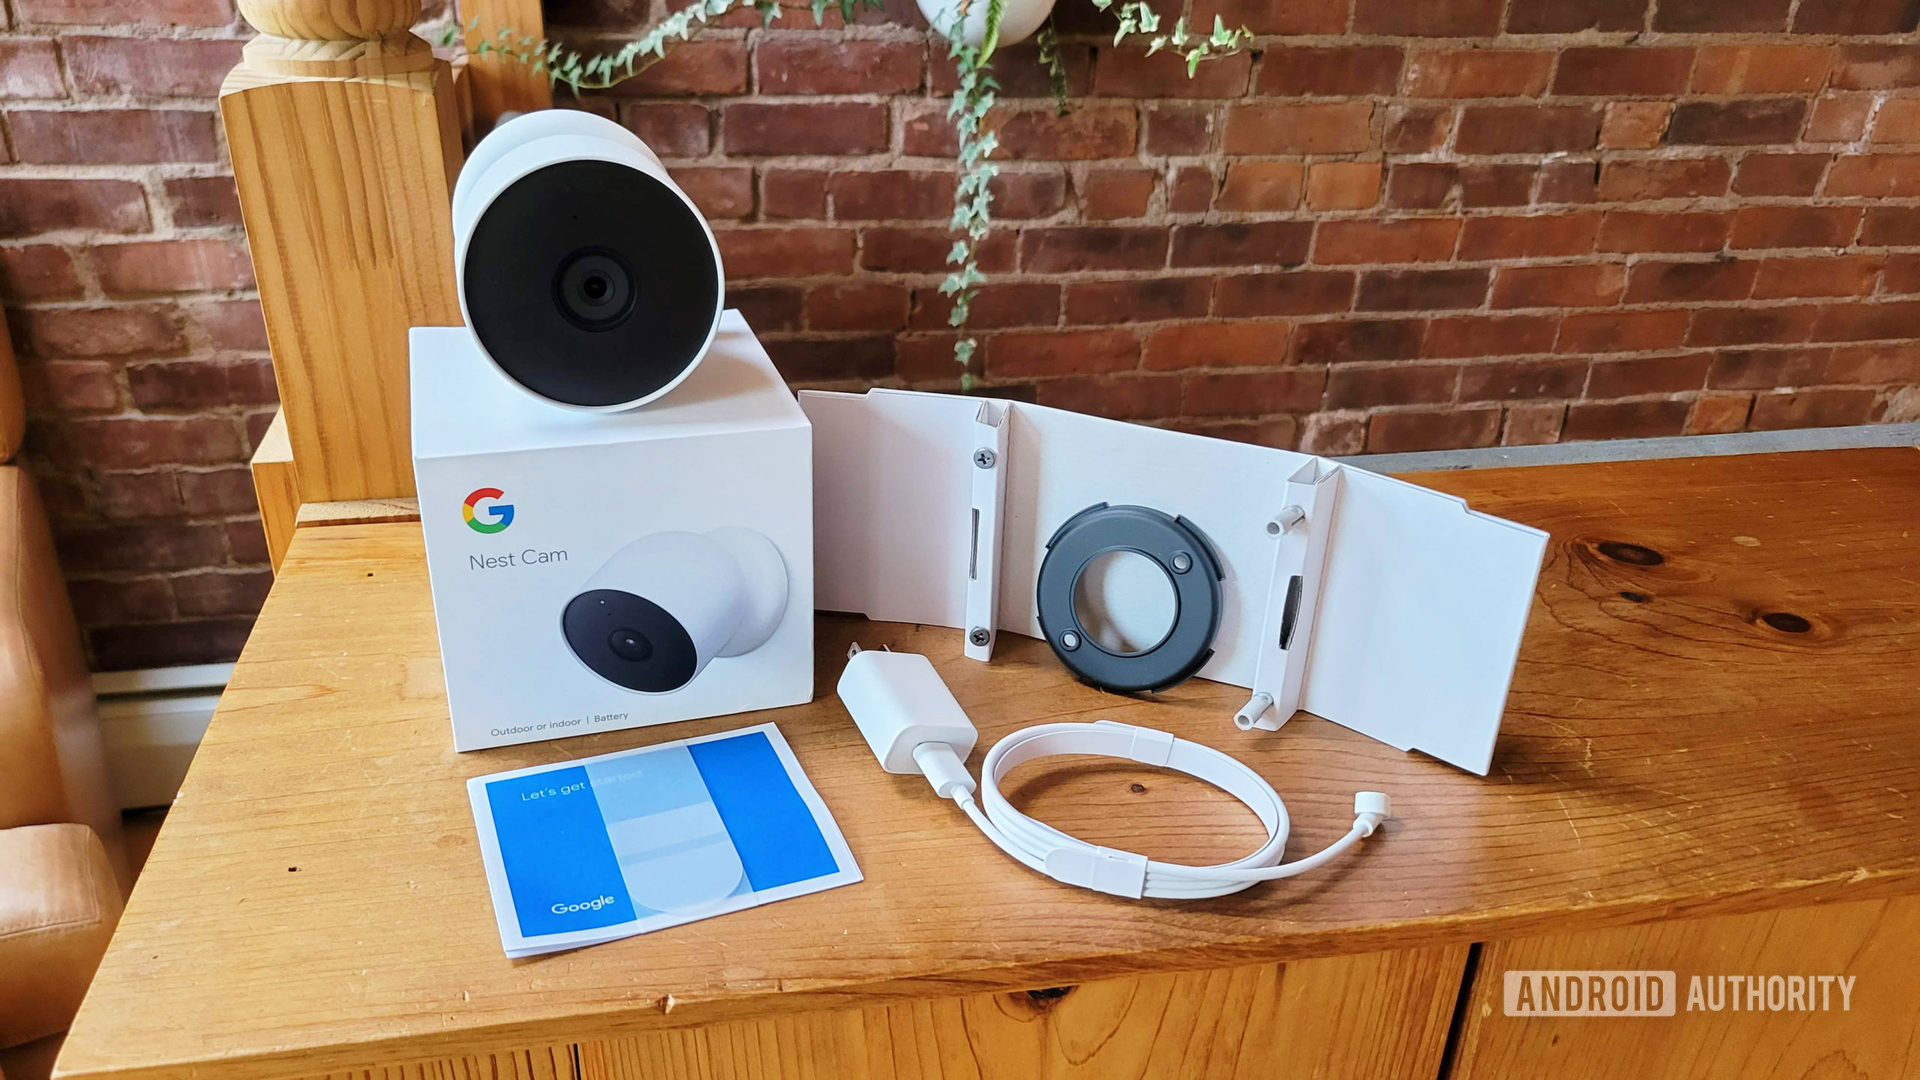 Google nest cam review 2021 retail box contents